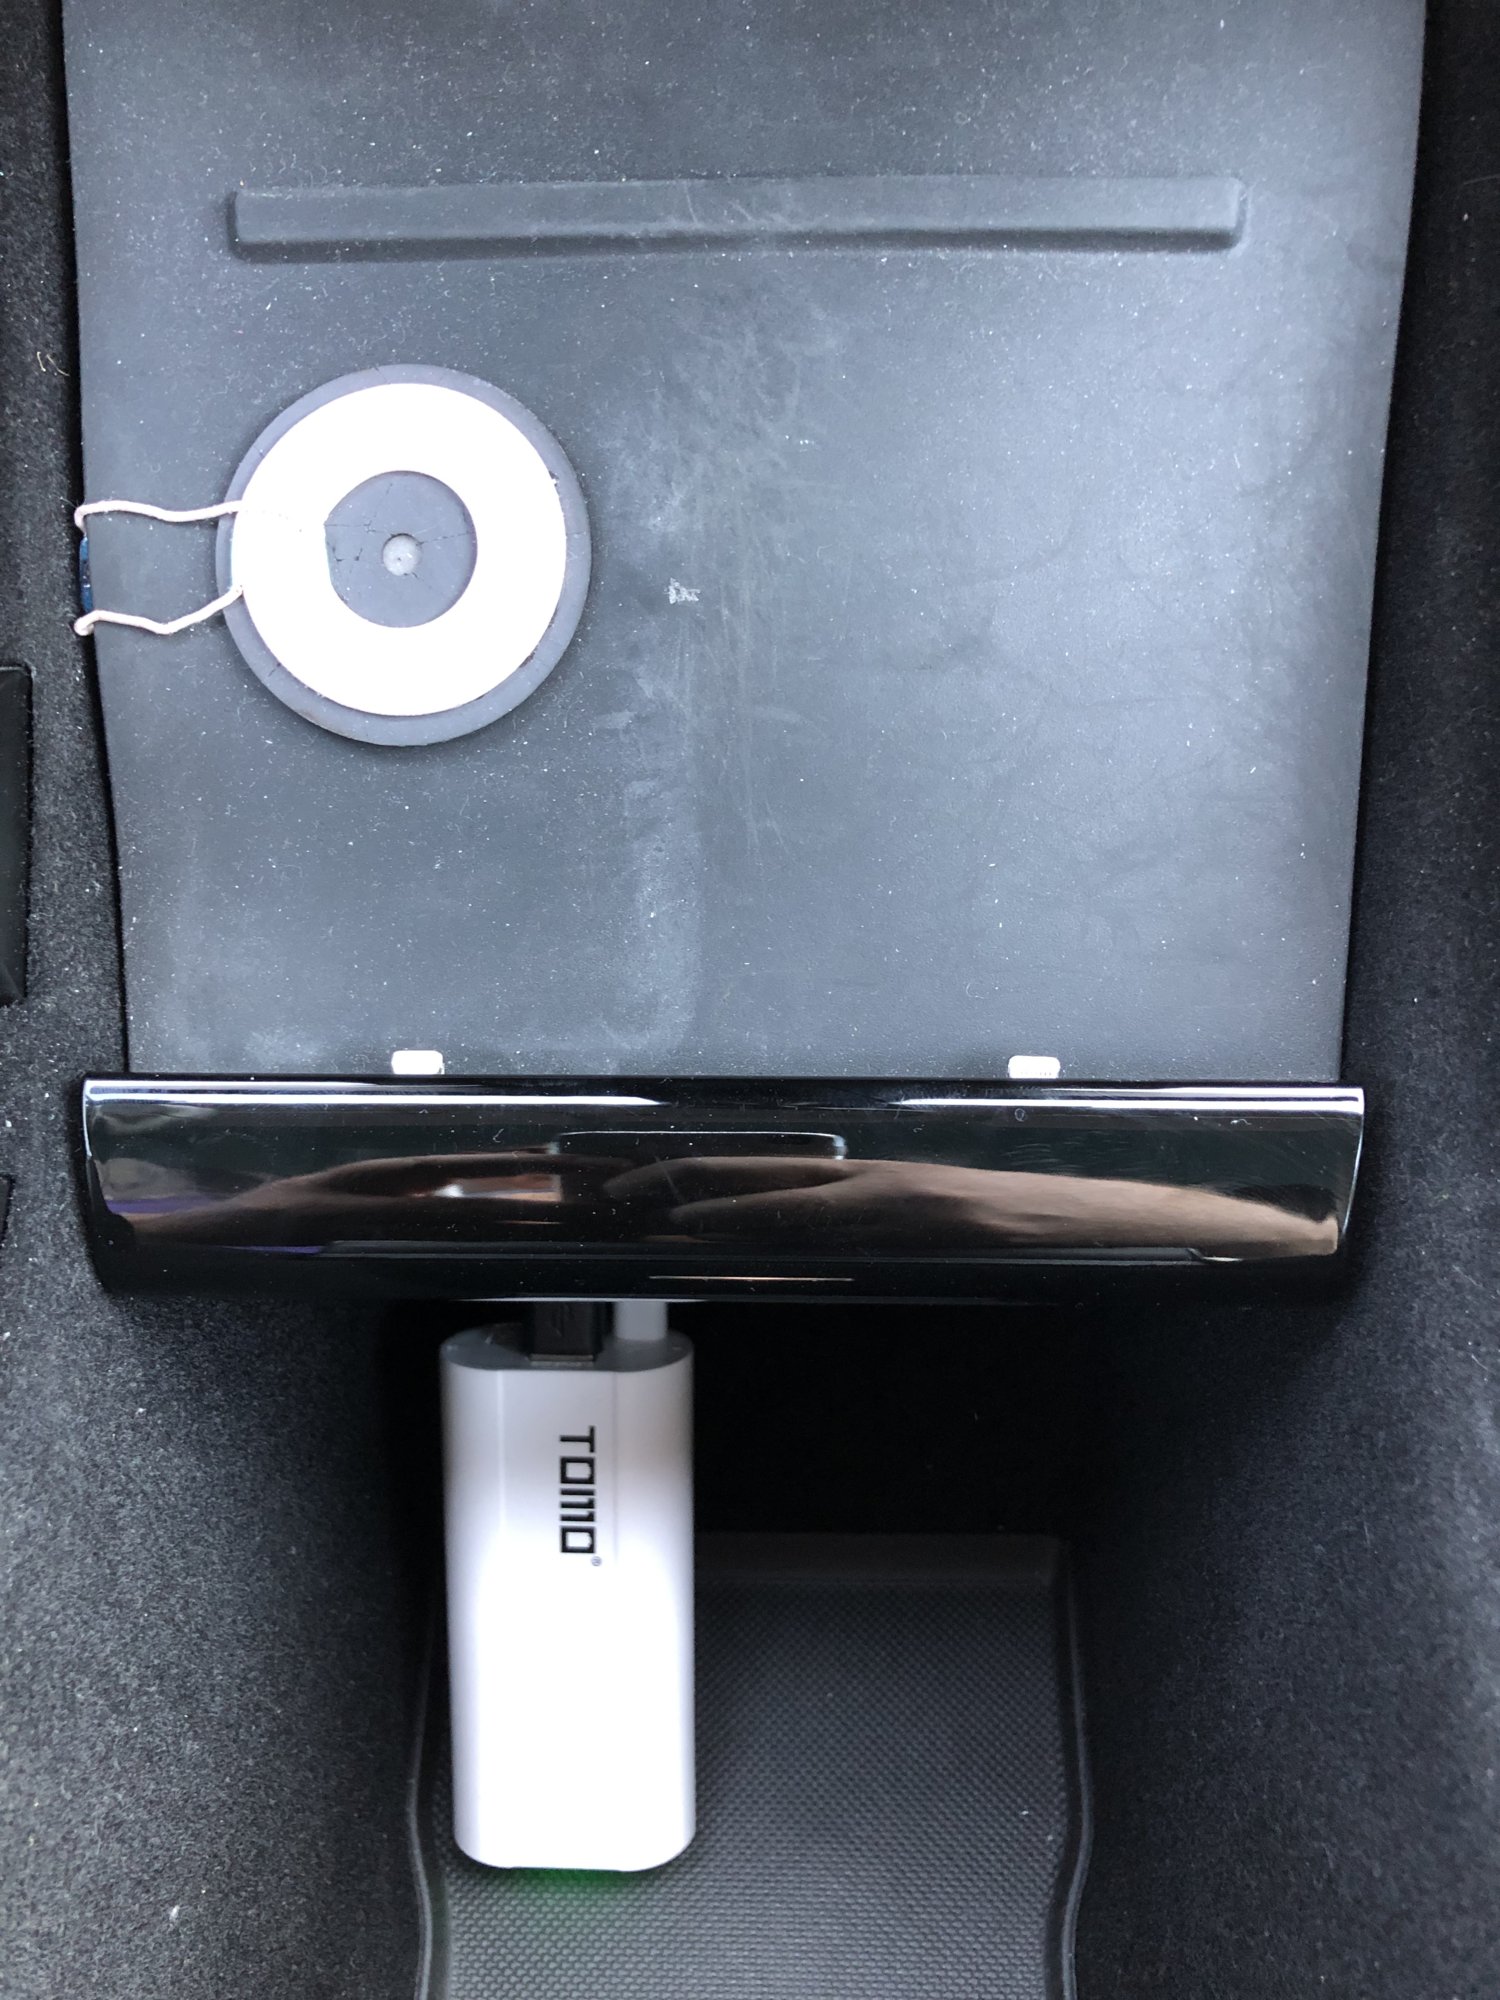 Model 3 USB Hub for Charging, Teslacam, Sentry, - Tesland